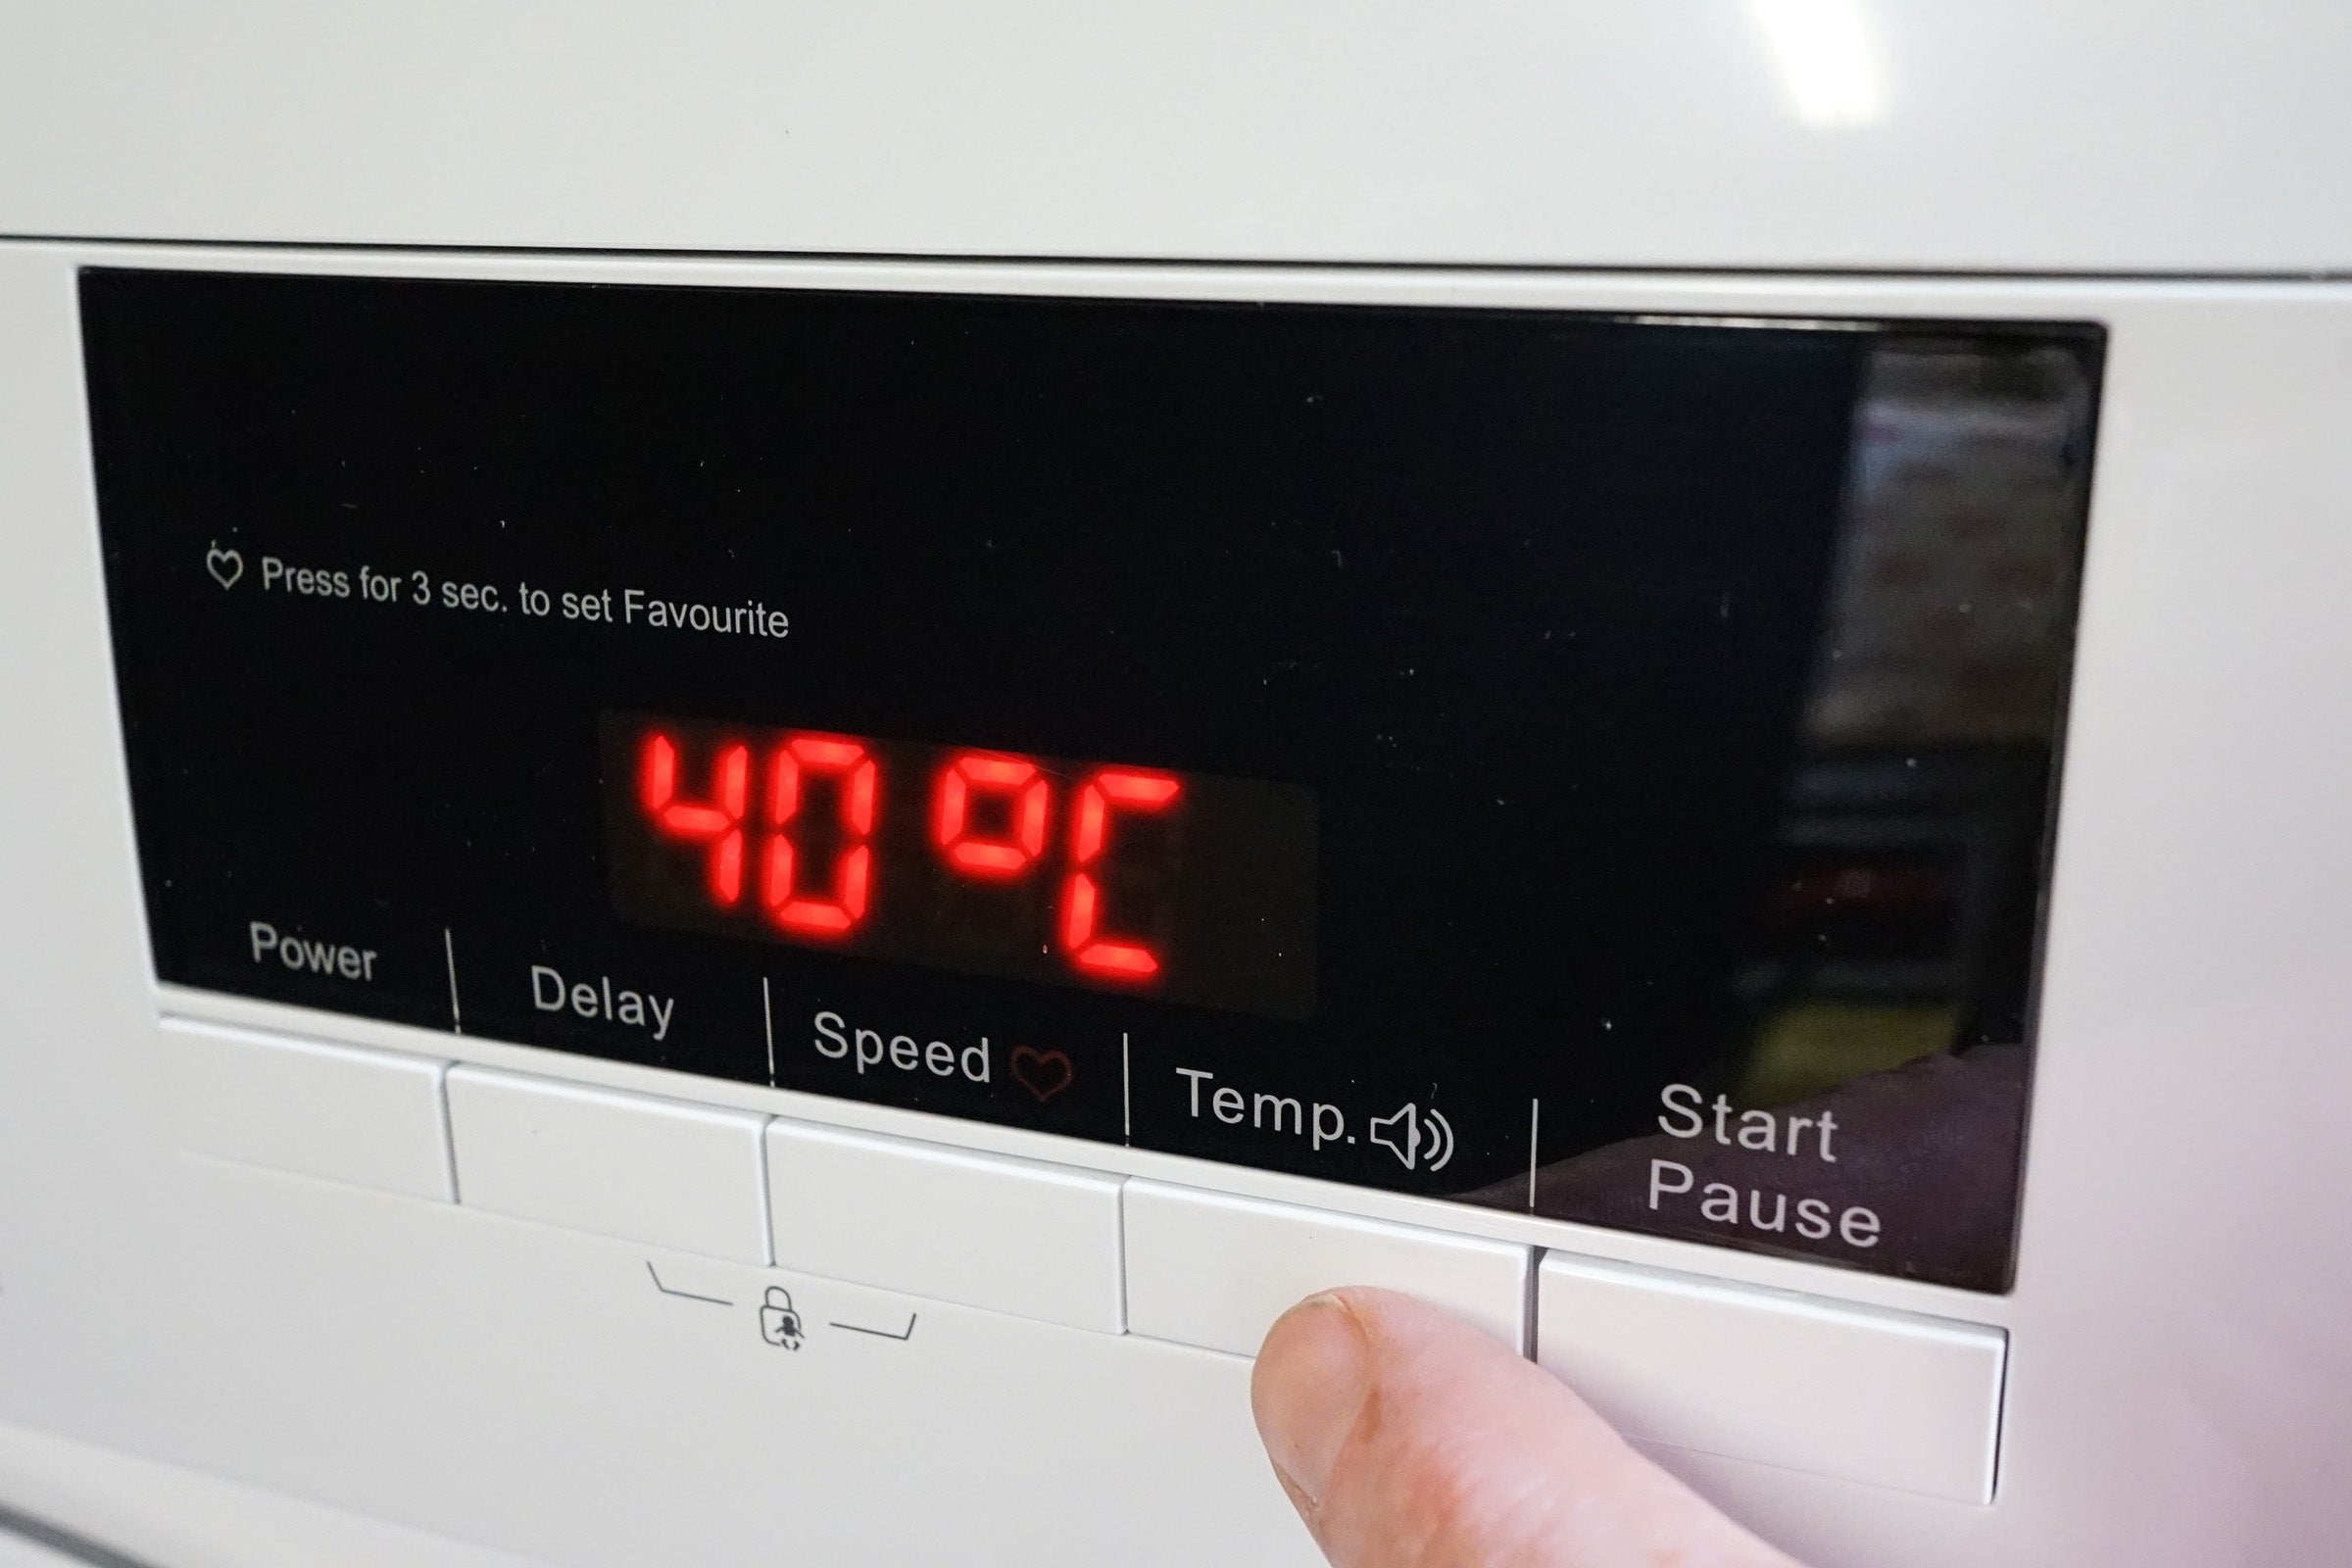 Logik washing machine control panel set to 40 degrees Celsius.